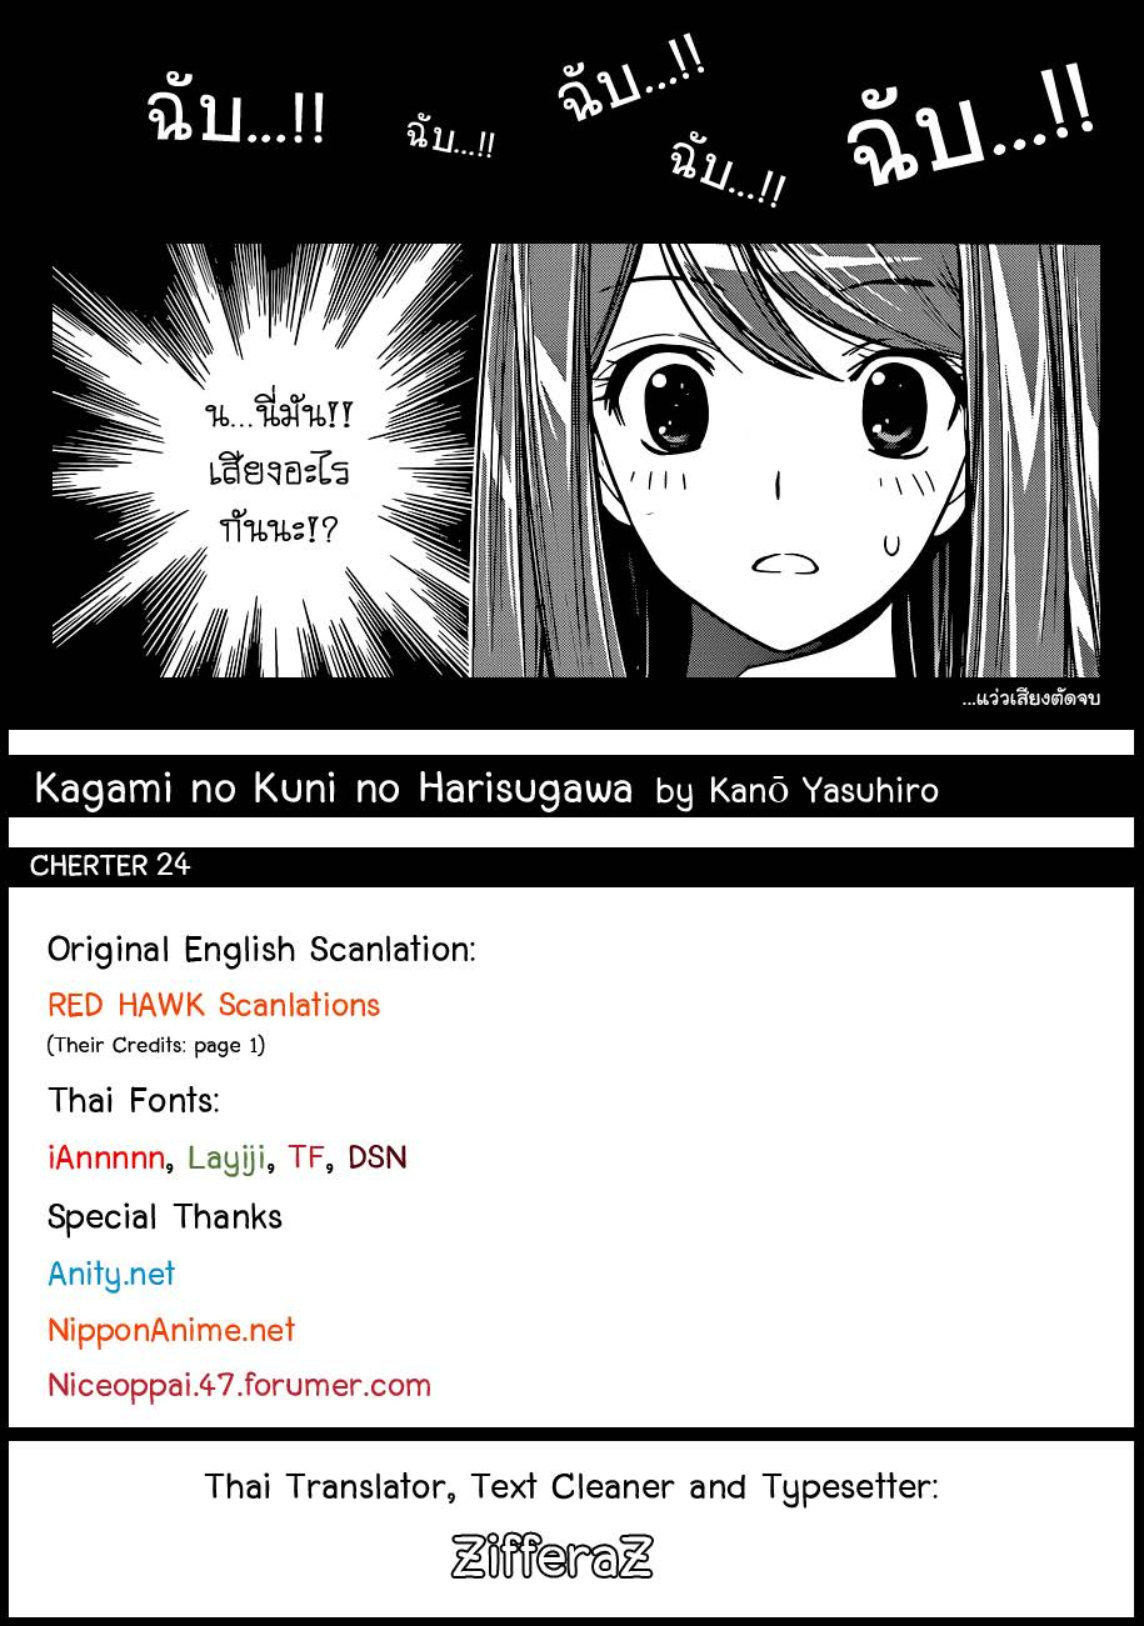 Kagami no Kuni no Harisugawa